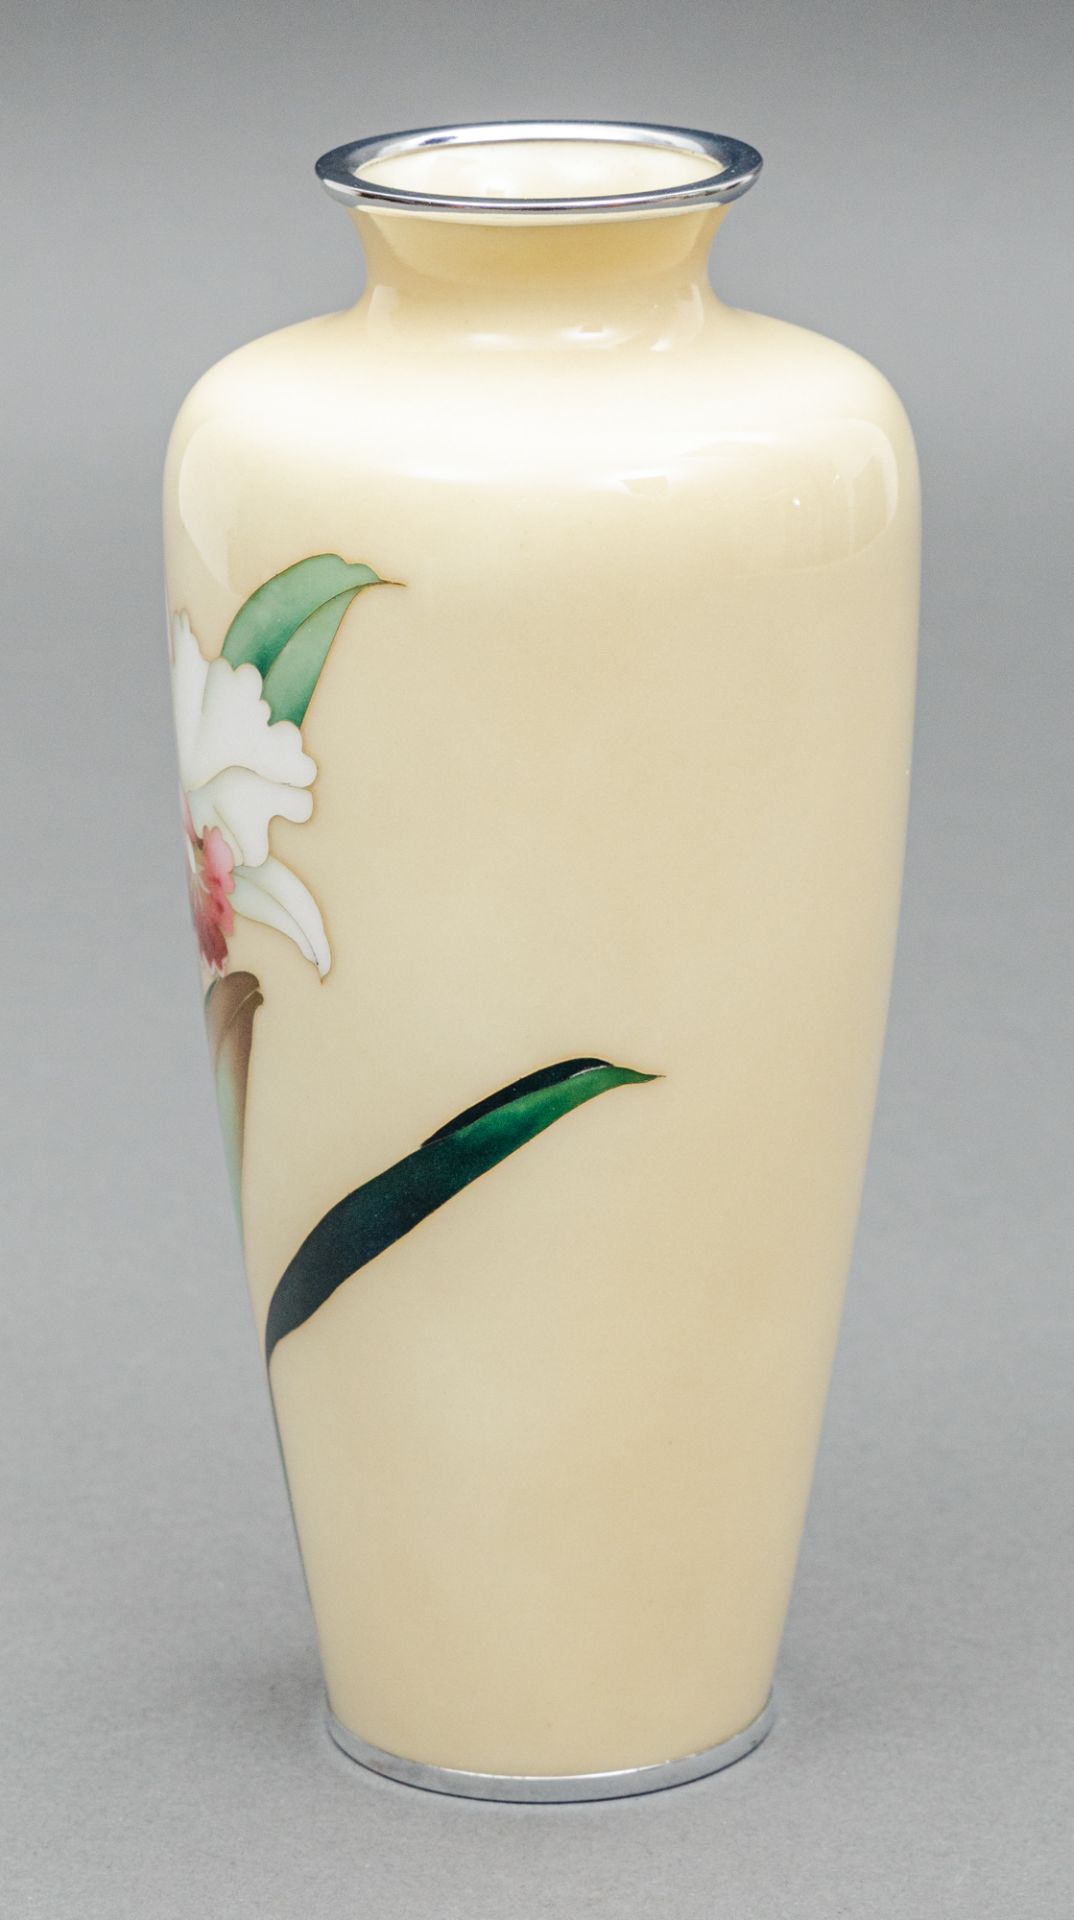 Cloisonné Vase, Japan, Ando Cloissoné Company (aktiv 1880-heute), Anfang 20 Jh. - Bild 2 aus 5